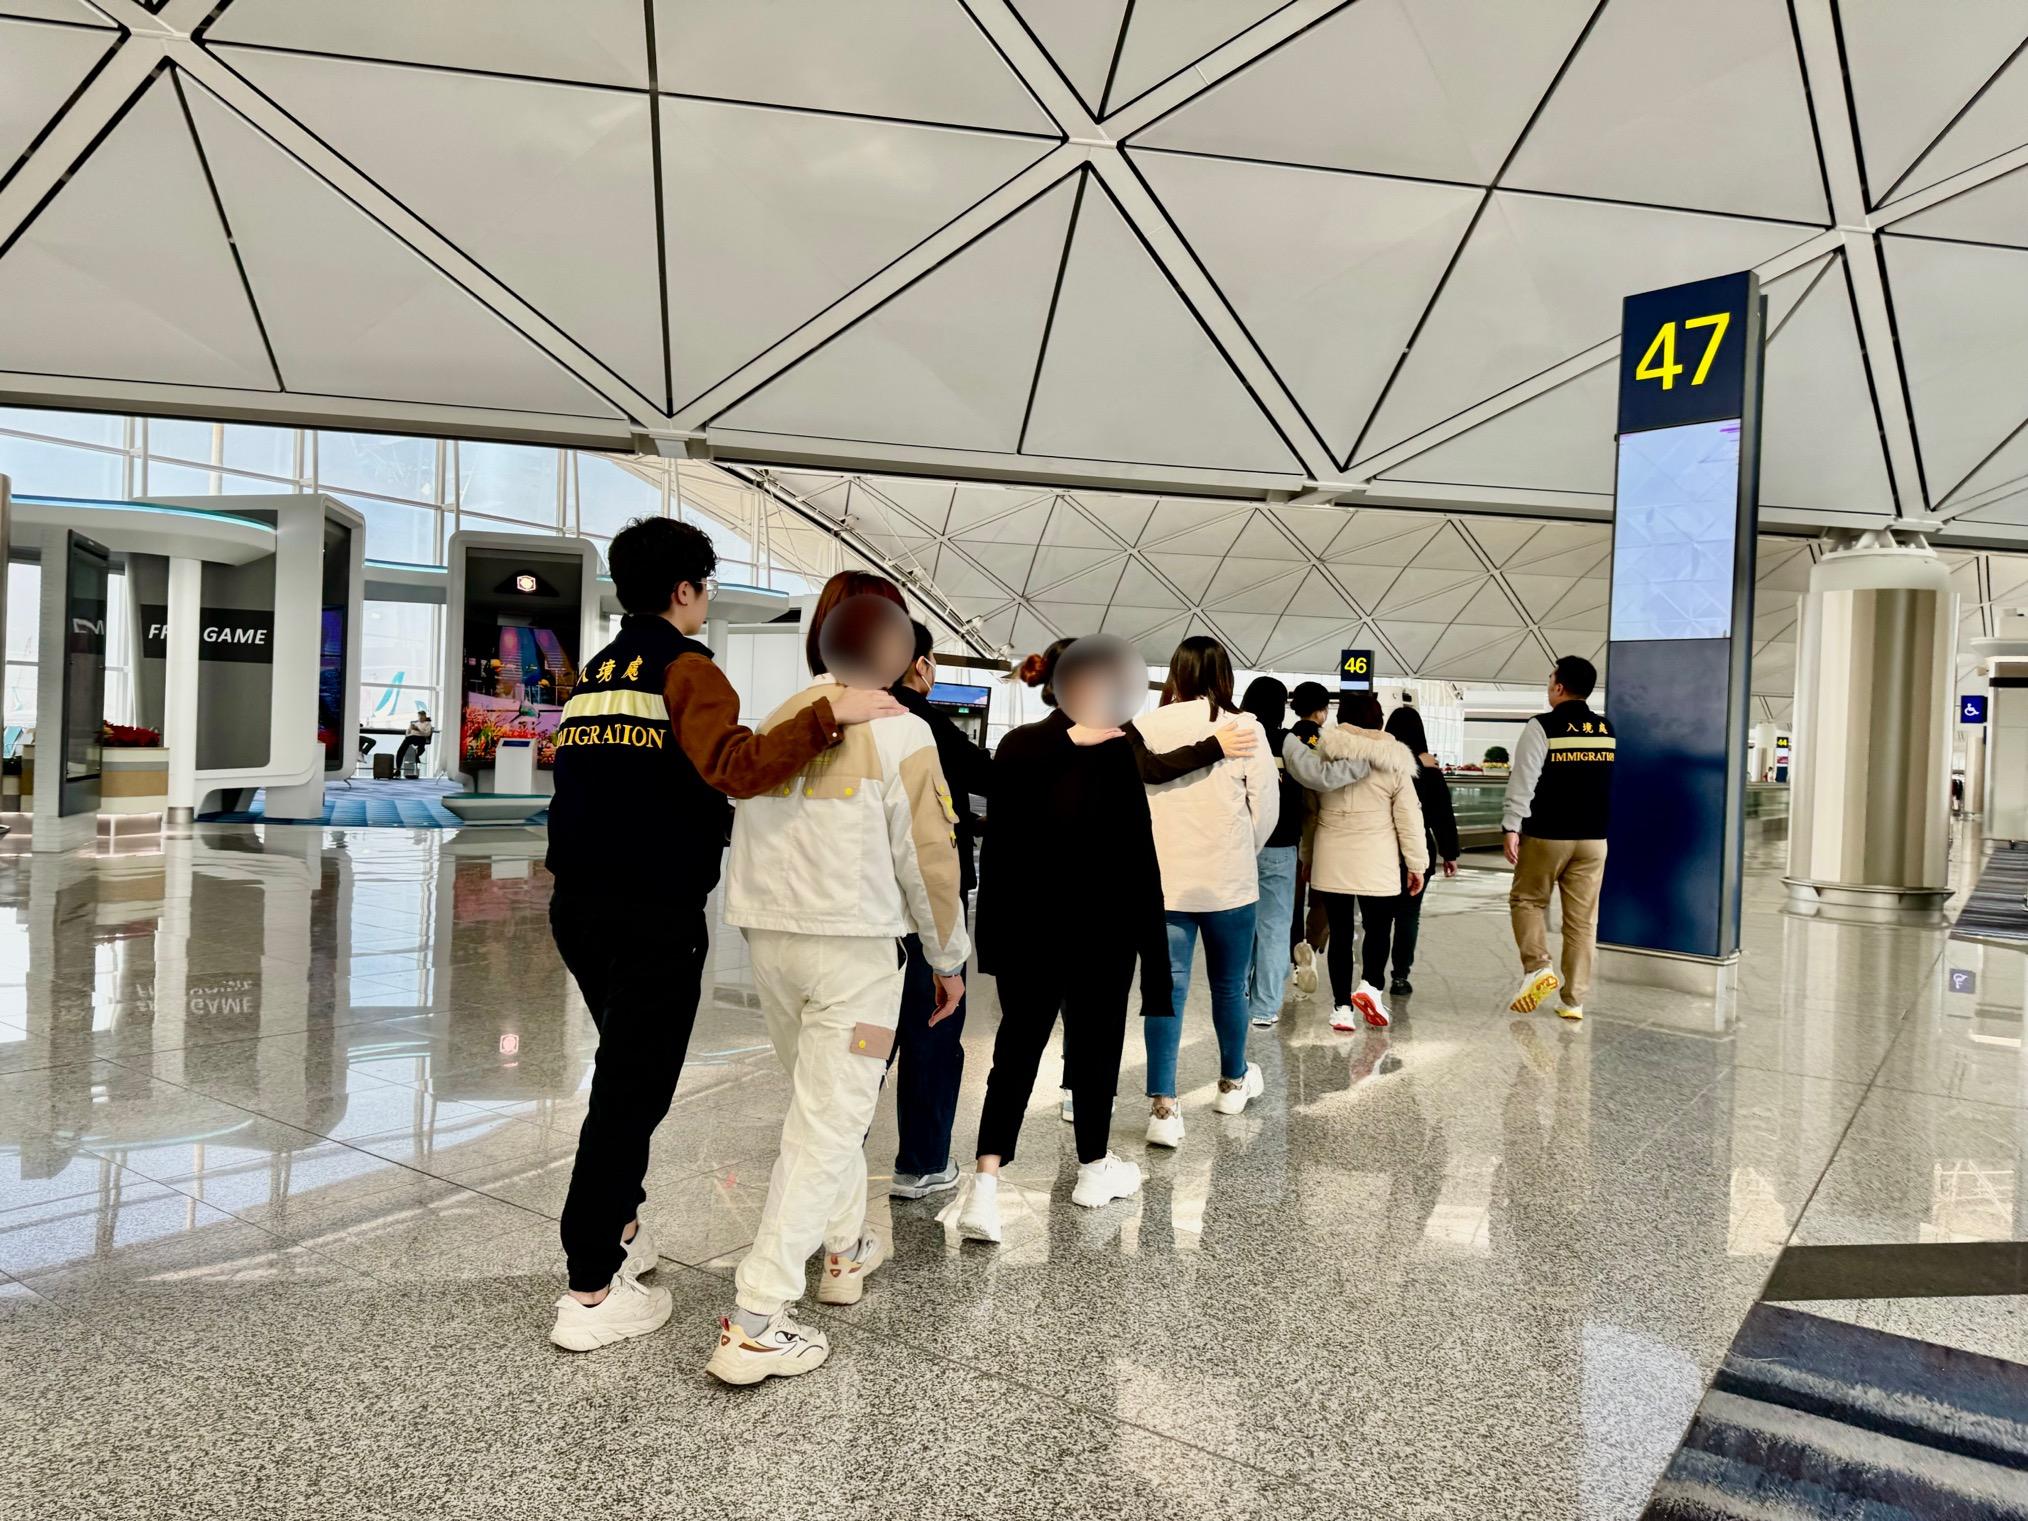 入境事务处（入境处）今日（十二月二十八日）执行遣送行动，将16名越南籍非法入境者遣返越南。图示被遣返人士在入境处人员押送下离港。